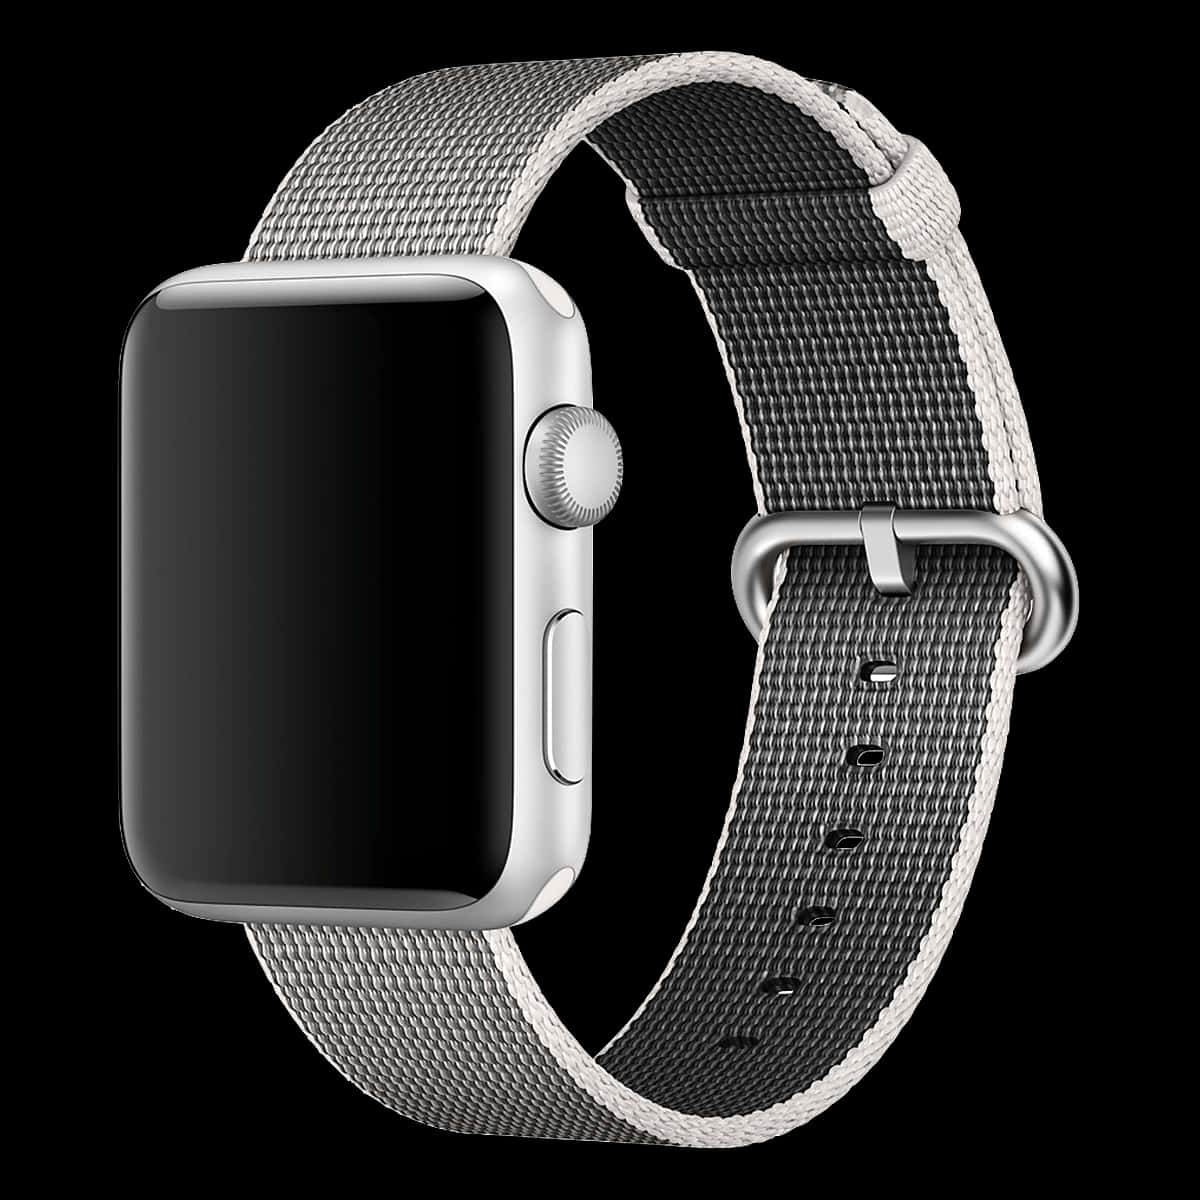 Holdstyr På Din Sundhed Og Aktiviteter Med En Apple Watch.